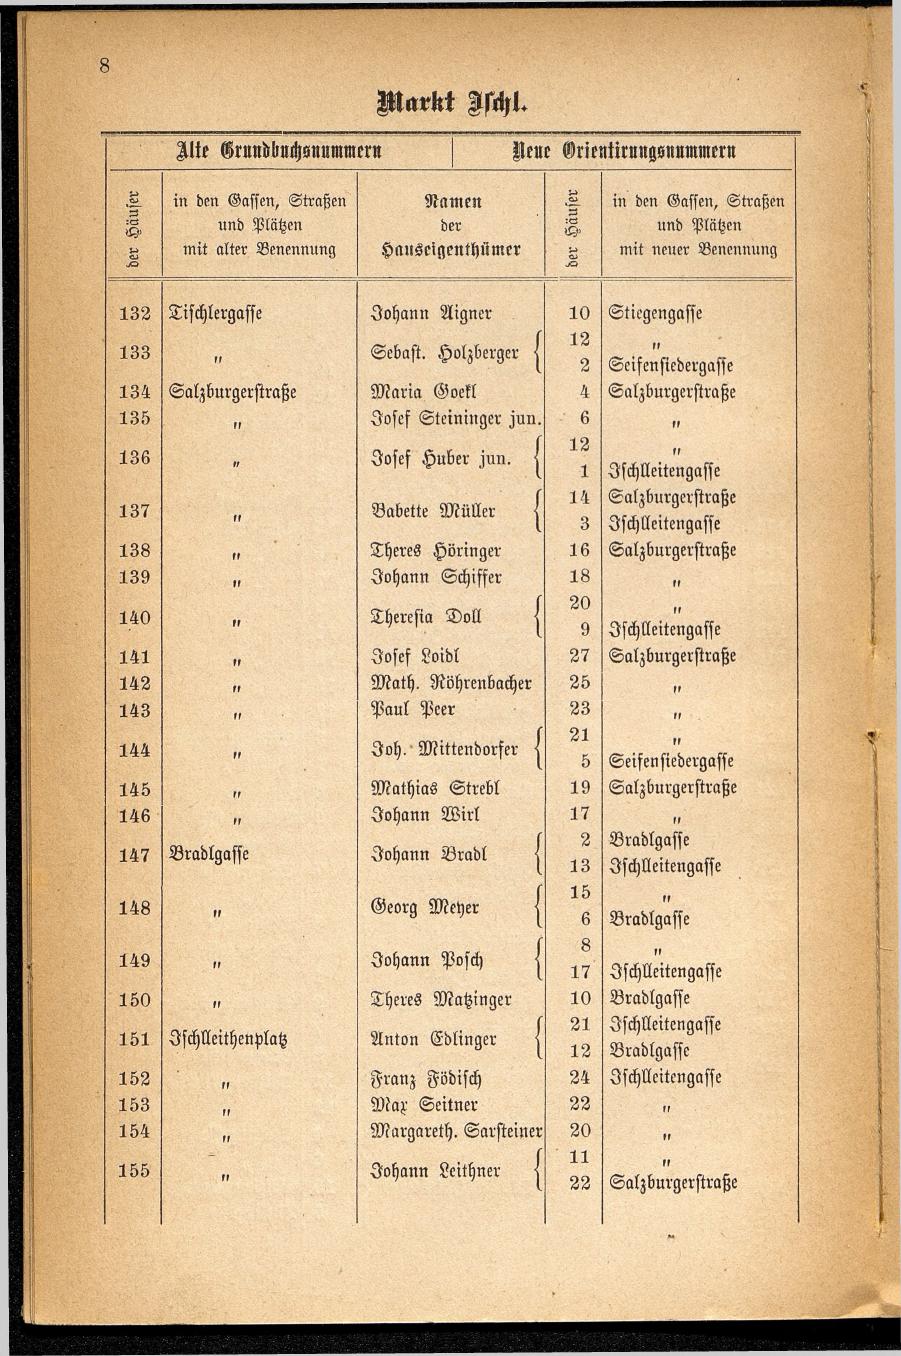 Häuser-Verzeichnis des Marktes und Kurortes Ischl nach den neuen Orientirungsnummern 1881 - Seite 12